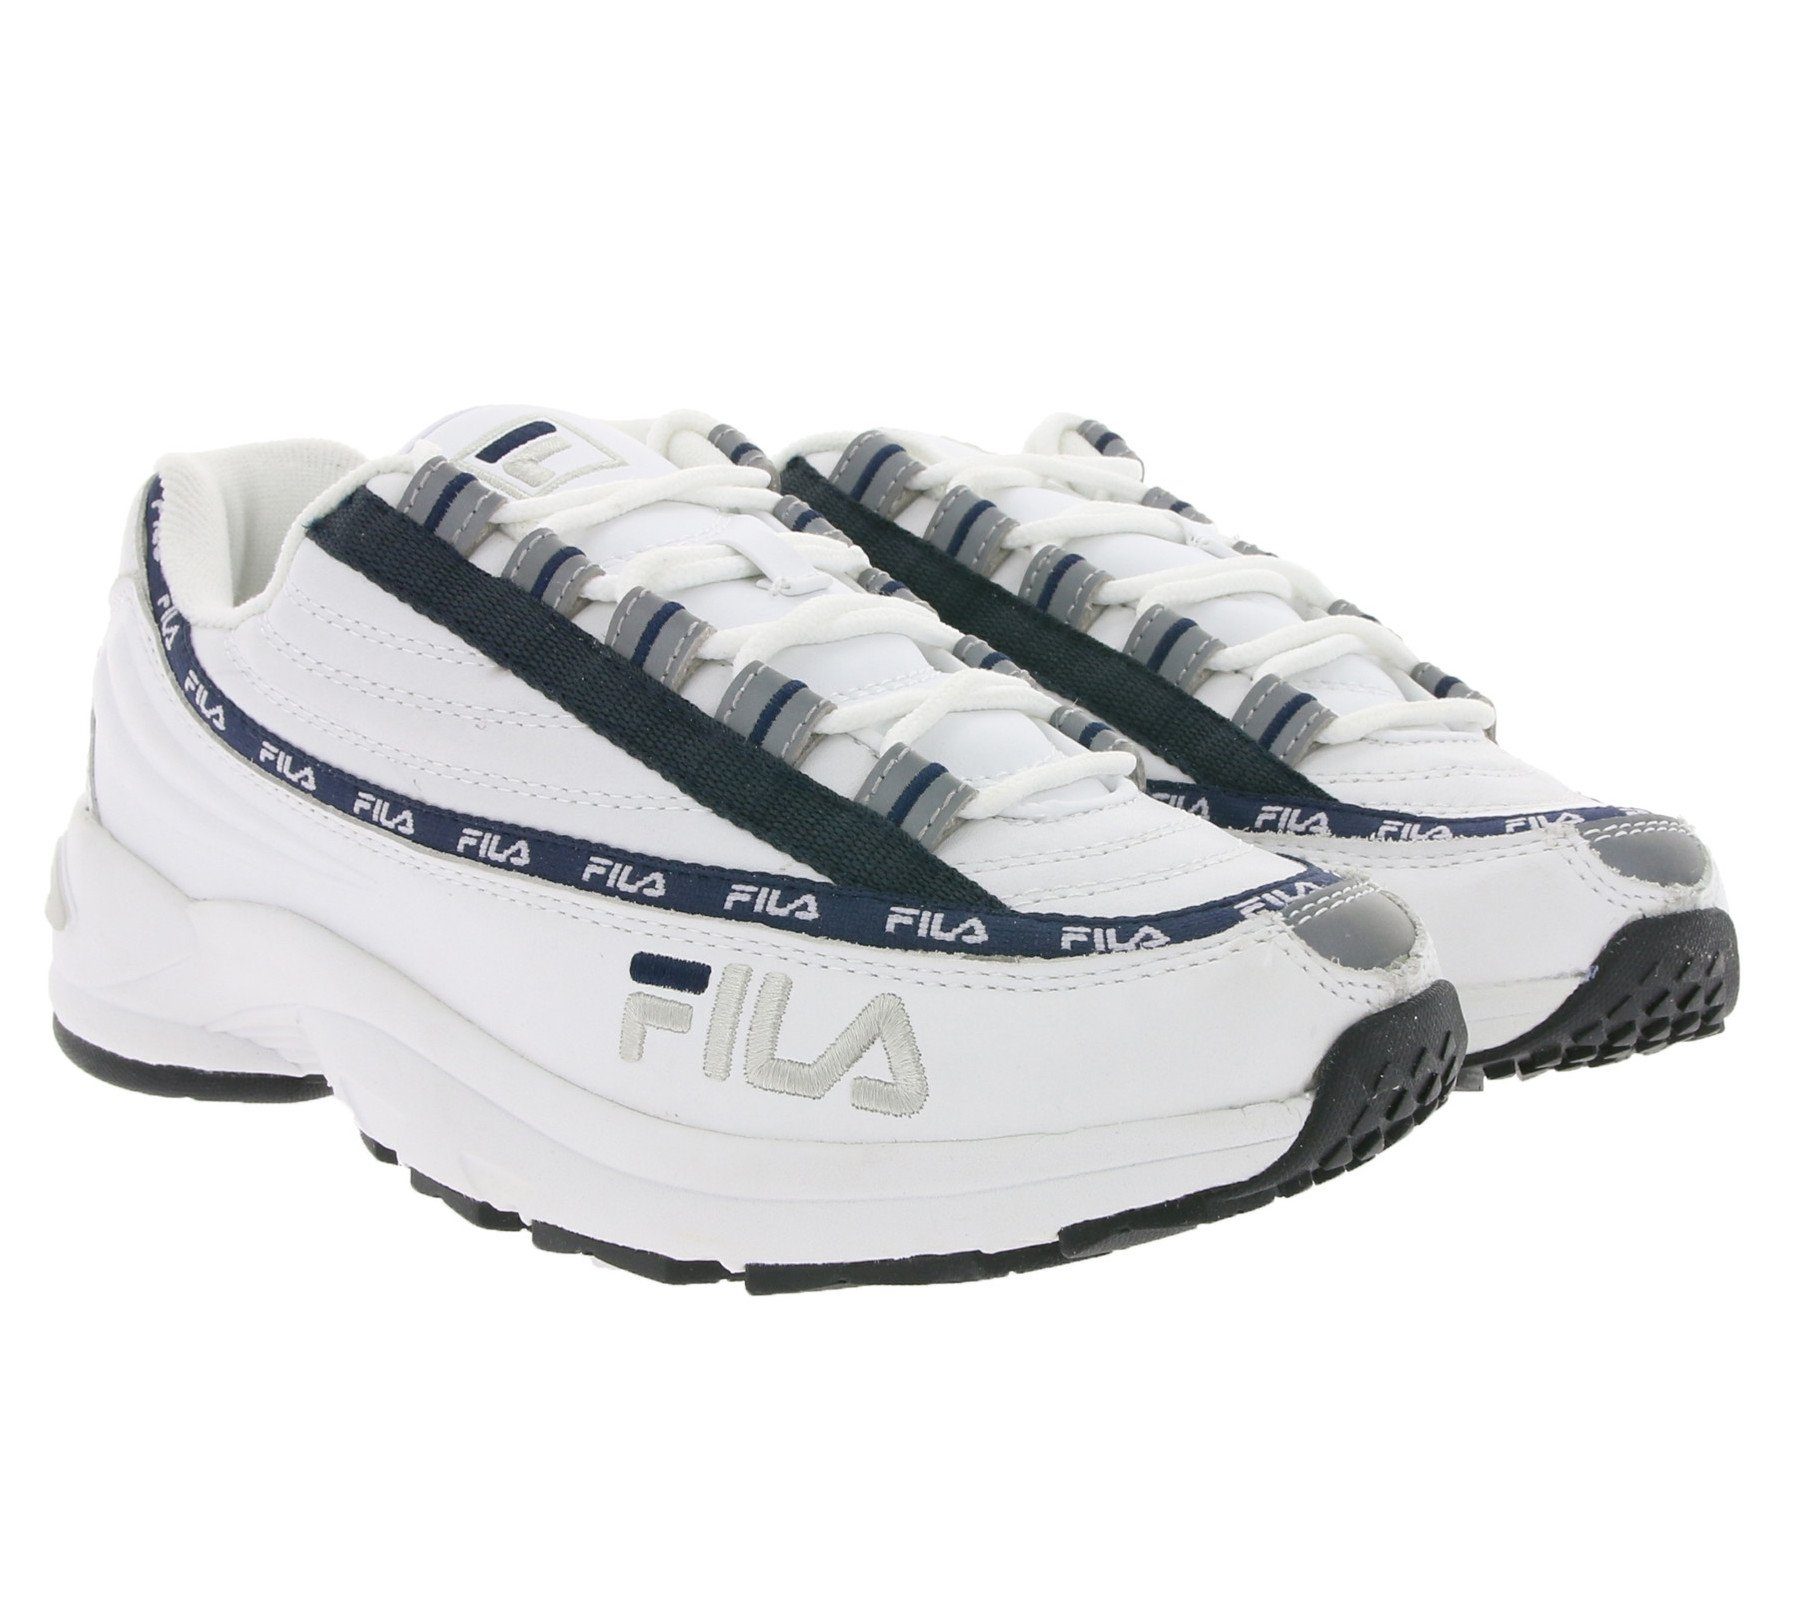 Fila »FILA 90s Turn-Schuhe schlichte Retro-Sneaker DSTR97 L Freizeit-Schuhe  Weiß/Navy« Sneaker online kaufen | OTTO